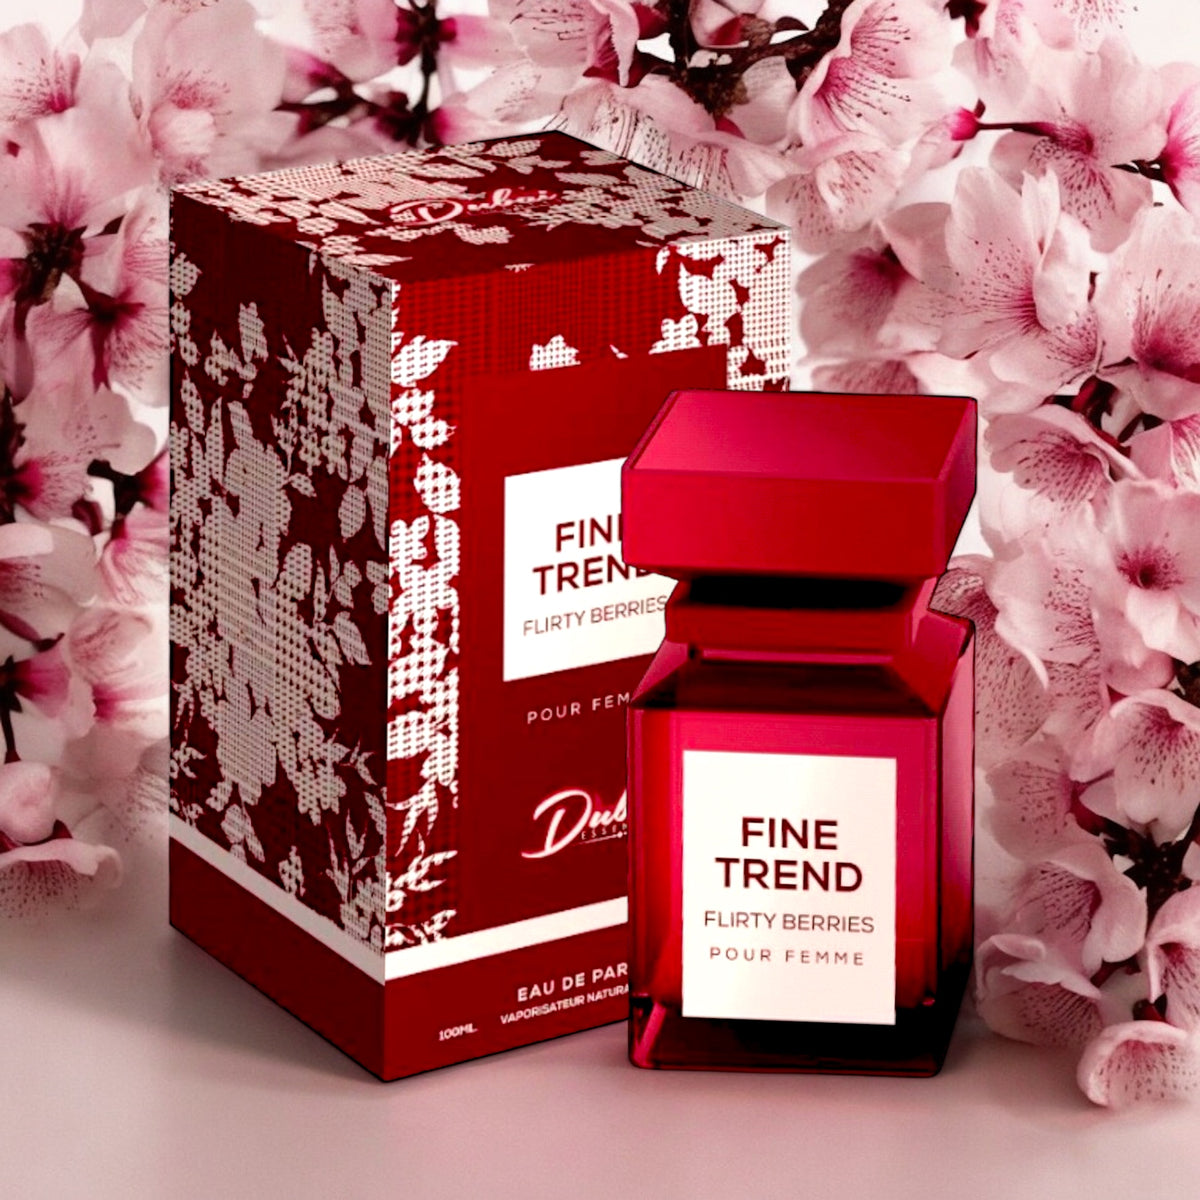 Fine Trend Flirty Berries Pour Femme By Dubai Essences 3.4 OZ